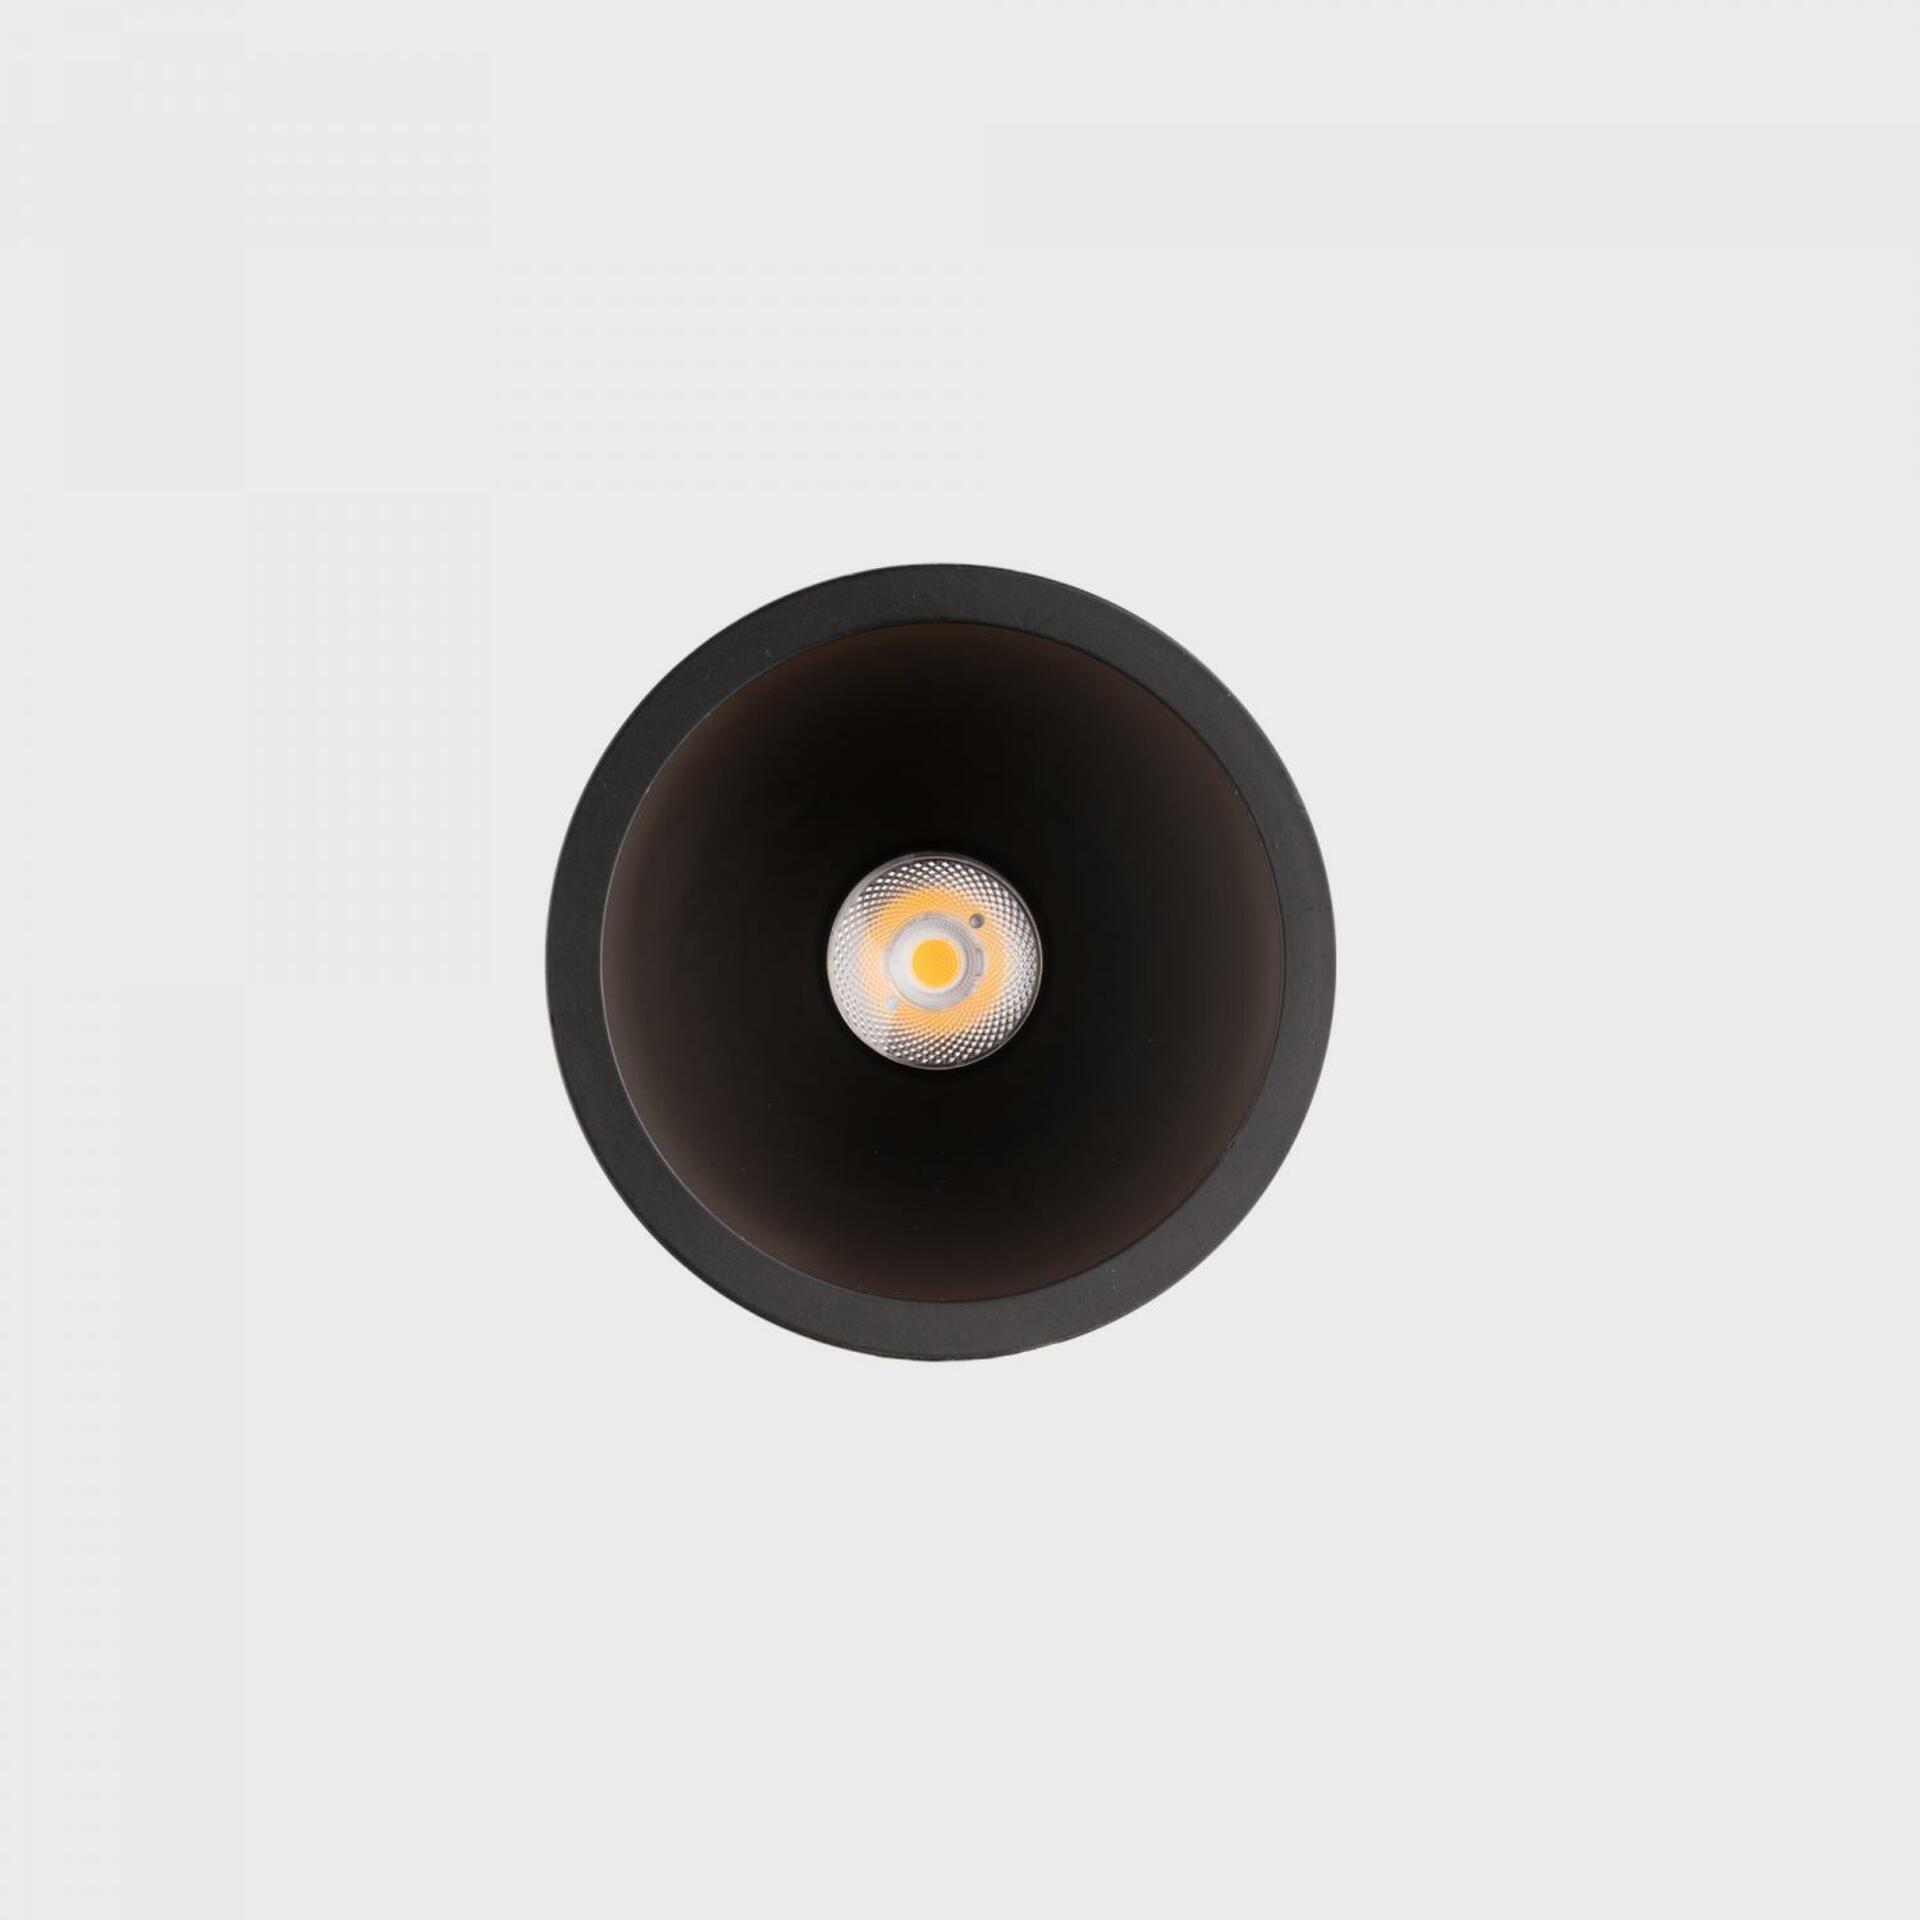 KOHL LIGHTING KOHL-Lighting NOON zapuštěné svítidlo s rámečkem pr. 70 mm černá 38° 5 W  CRI 80 3000K 1.10V